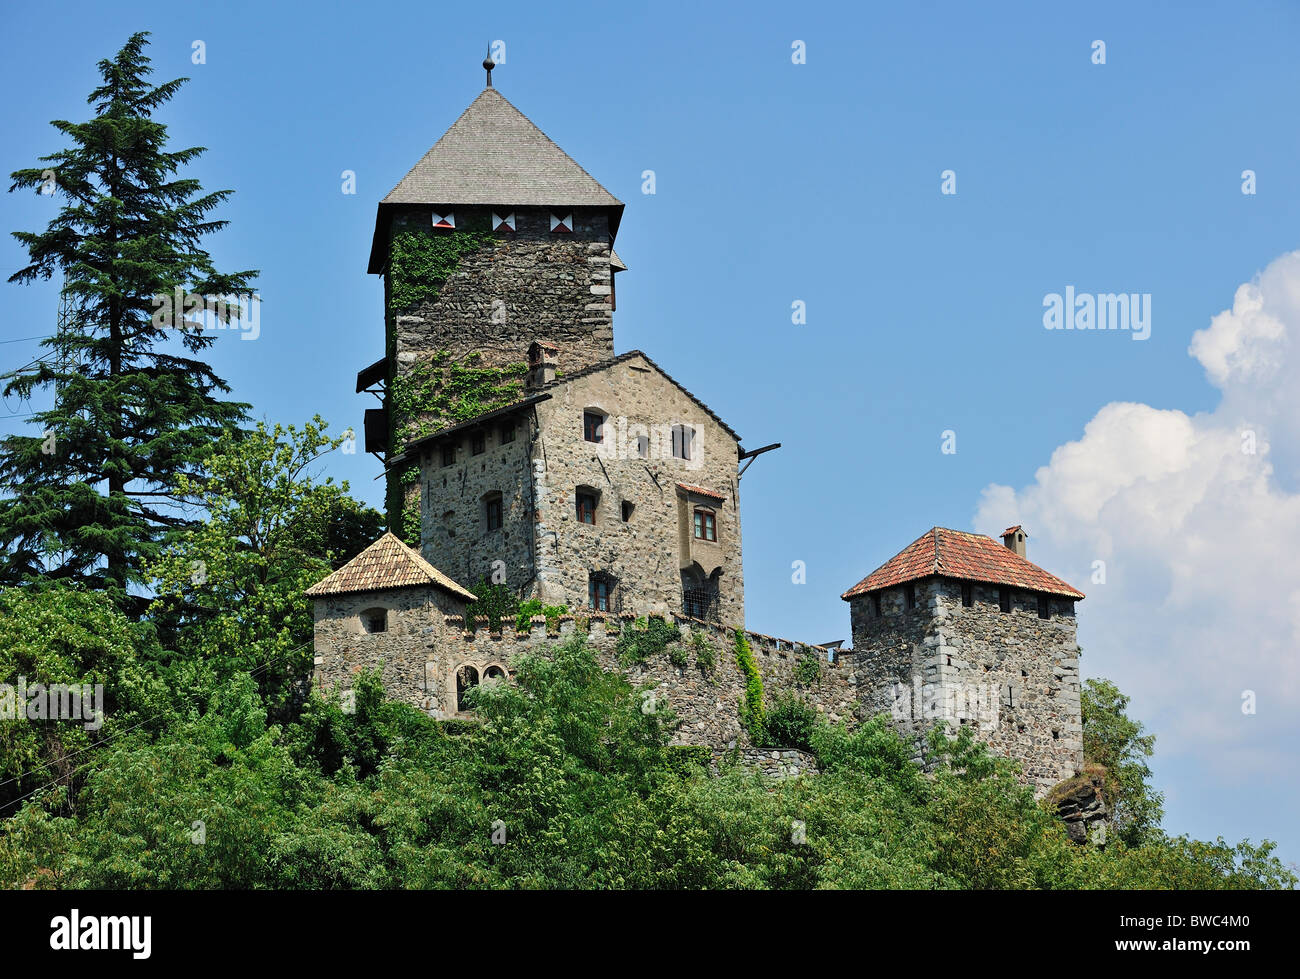 Le château de Branzoll à Chiusa / Klausen, Dolomites, Italie Banque D'Images